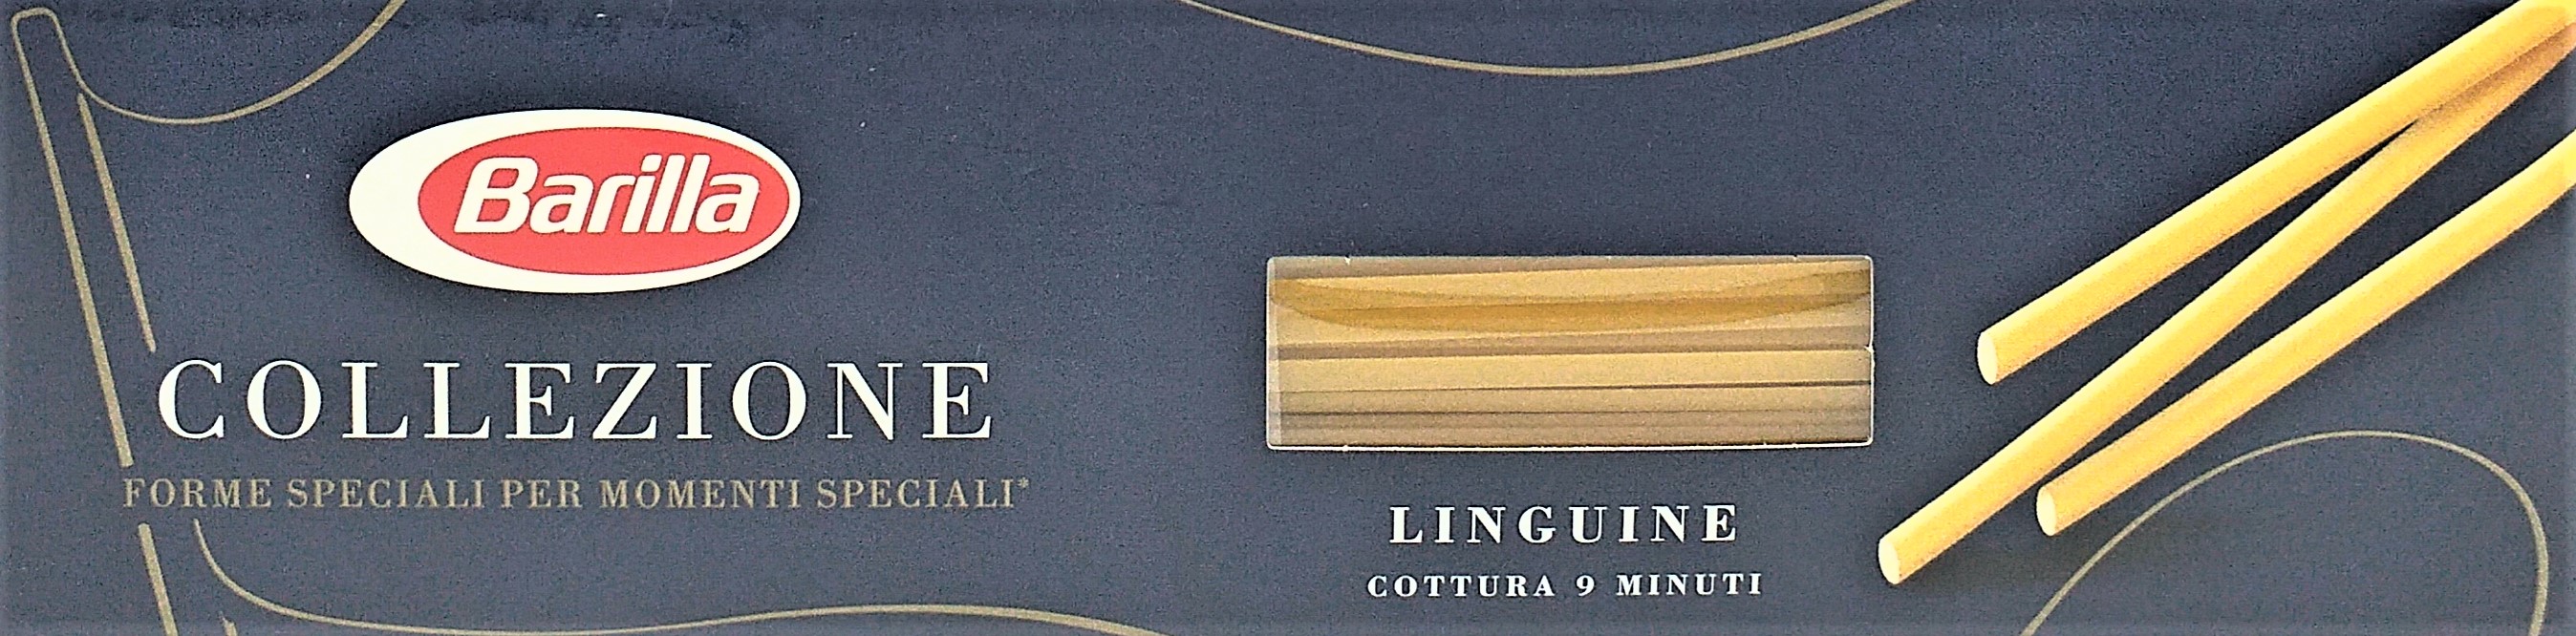 Barilla Pasta Linguine 500g